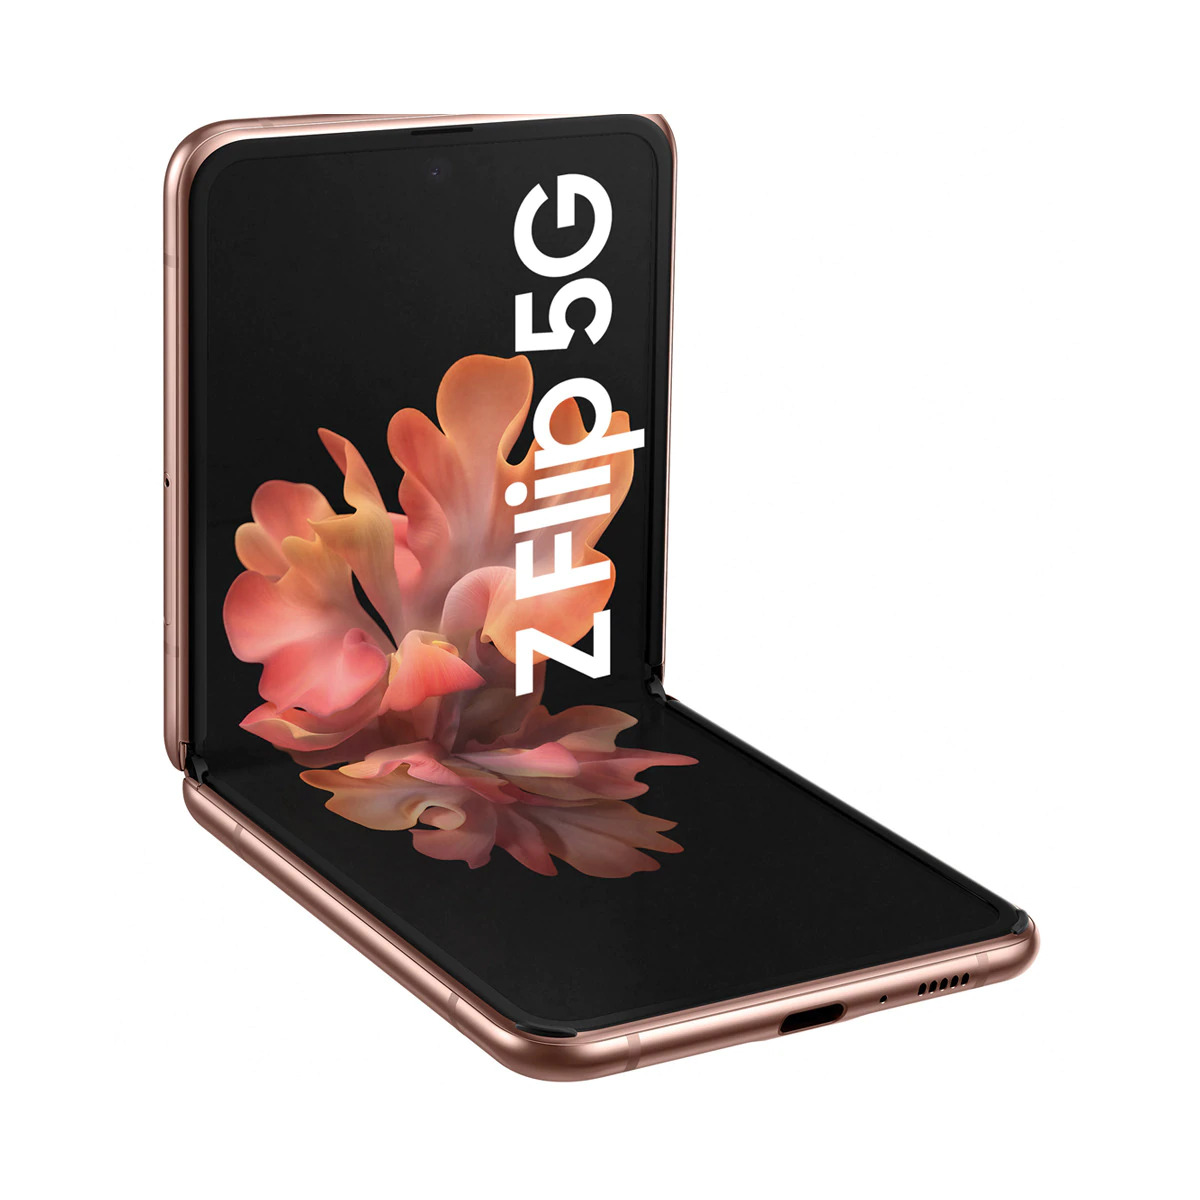 Galaxy Z Flip 5G